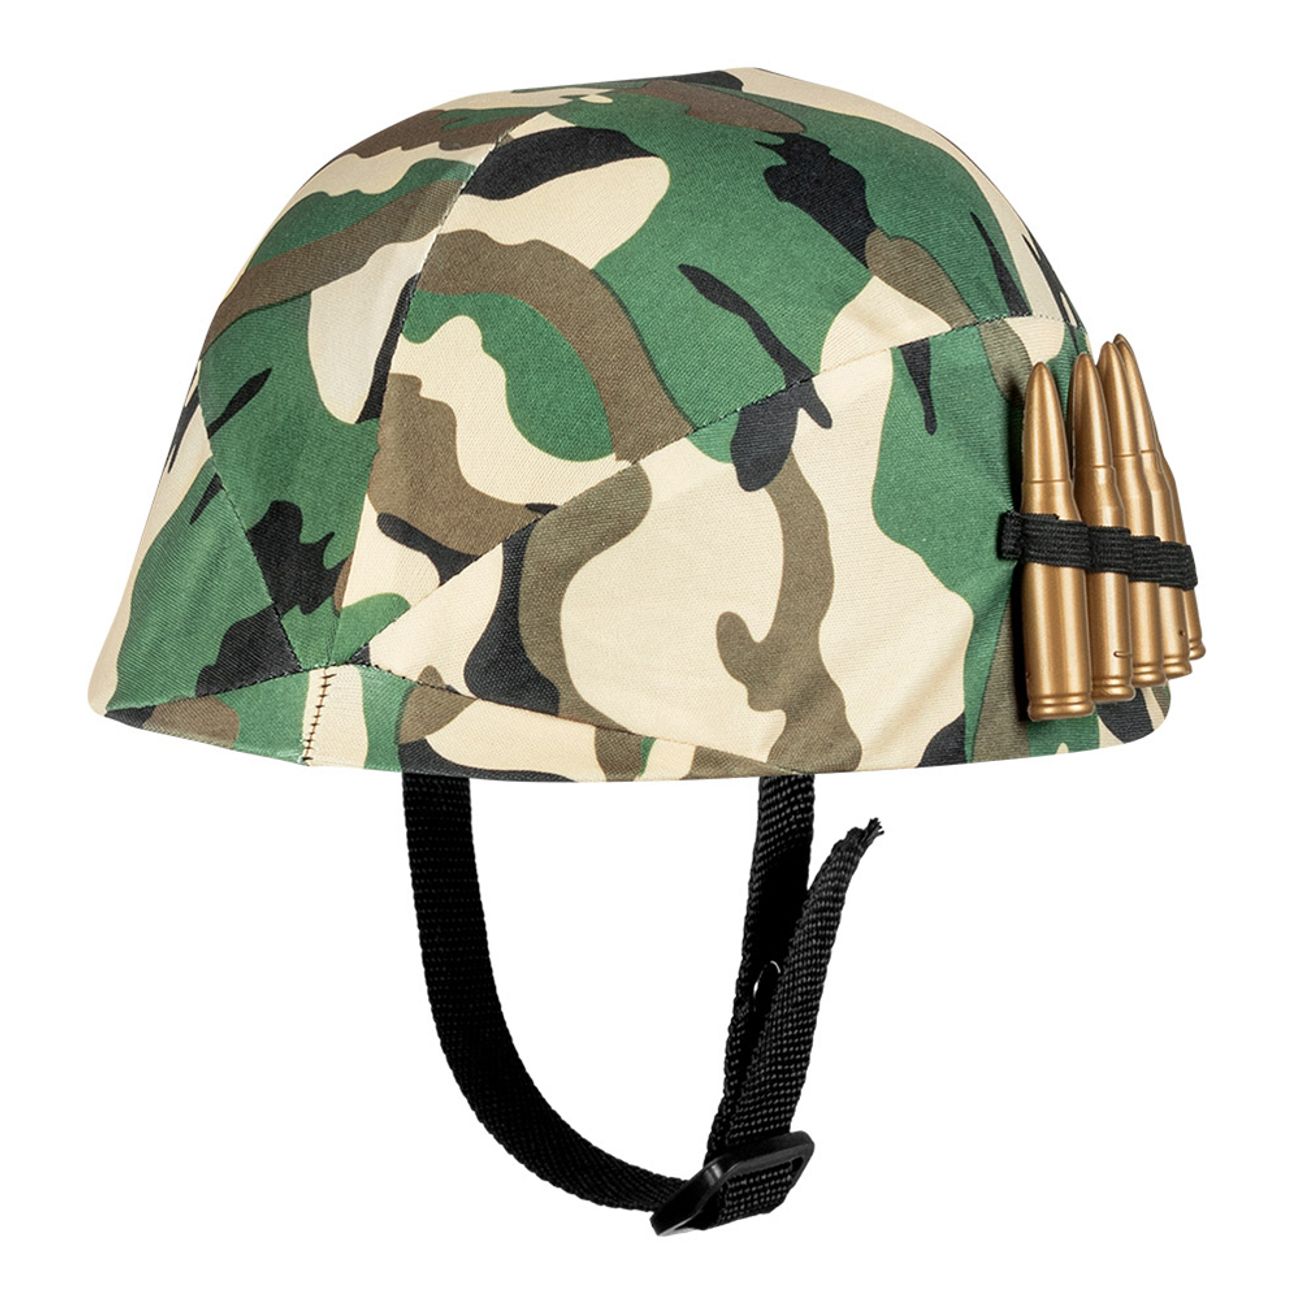 pc-child-helmet-military-adjustable-78288-1